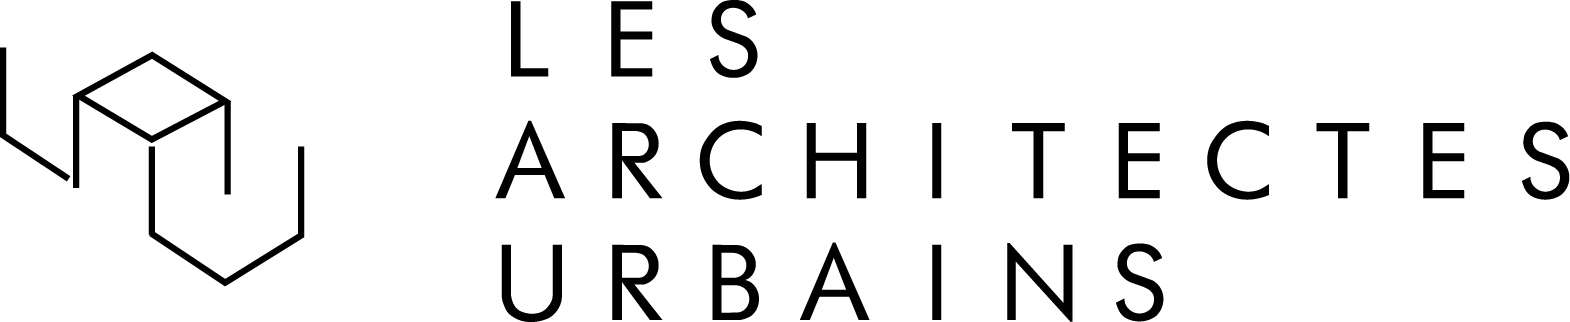 Les Architectes Urbains, Lyon, Annecy, Architecte, Architecte d’intérieur, Urbaniste, Aménagement, Décoration, Réhabilitation, Réaménagement